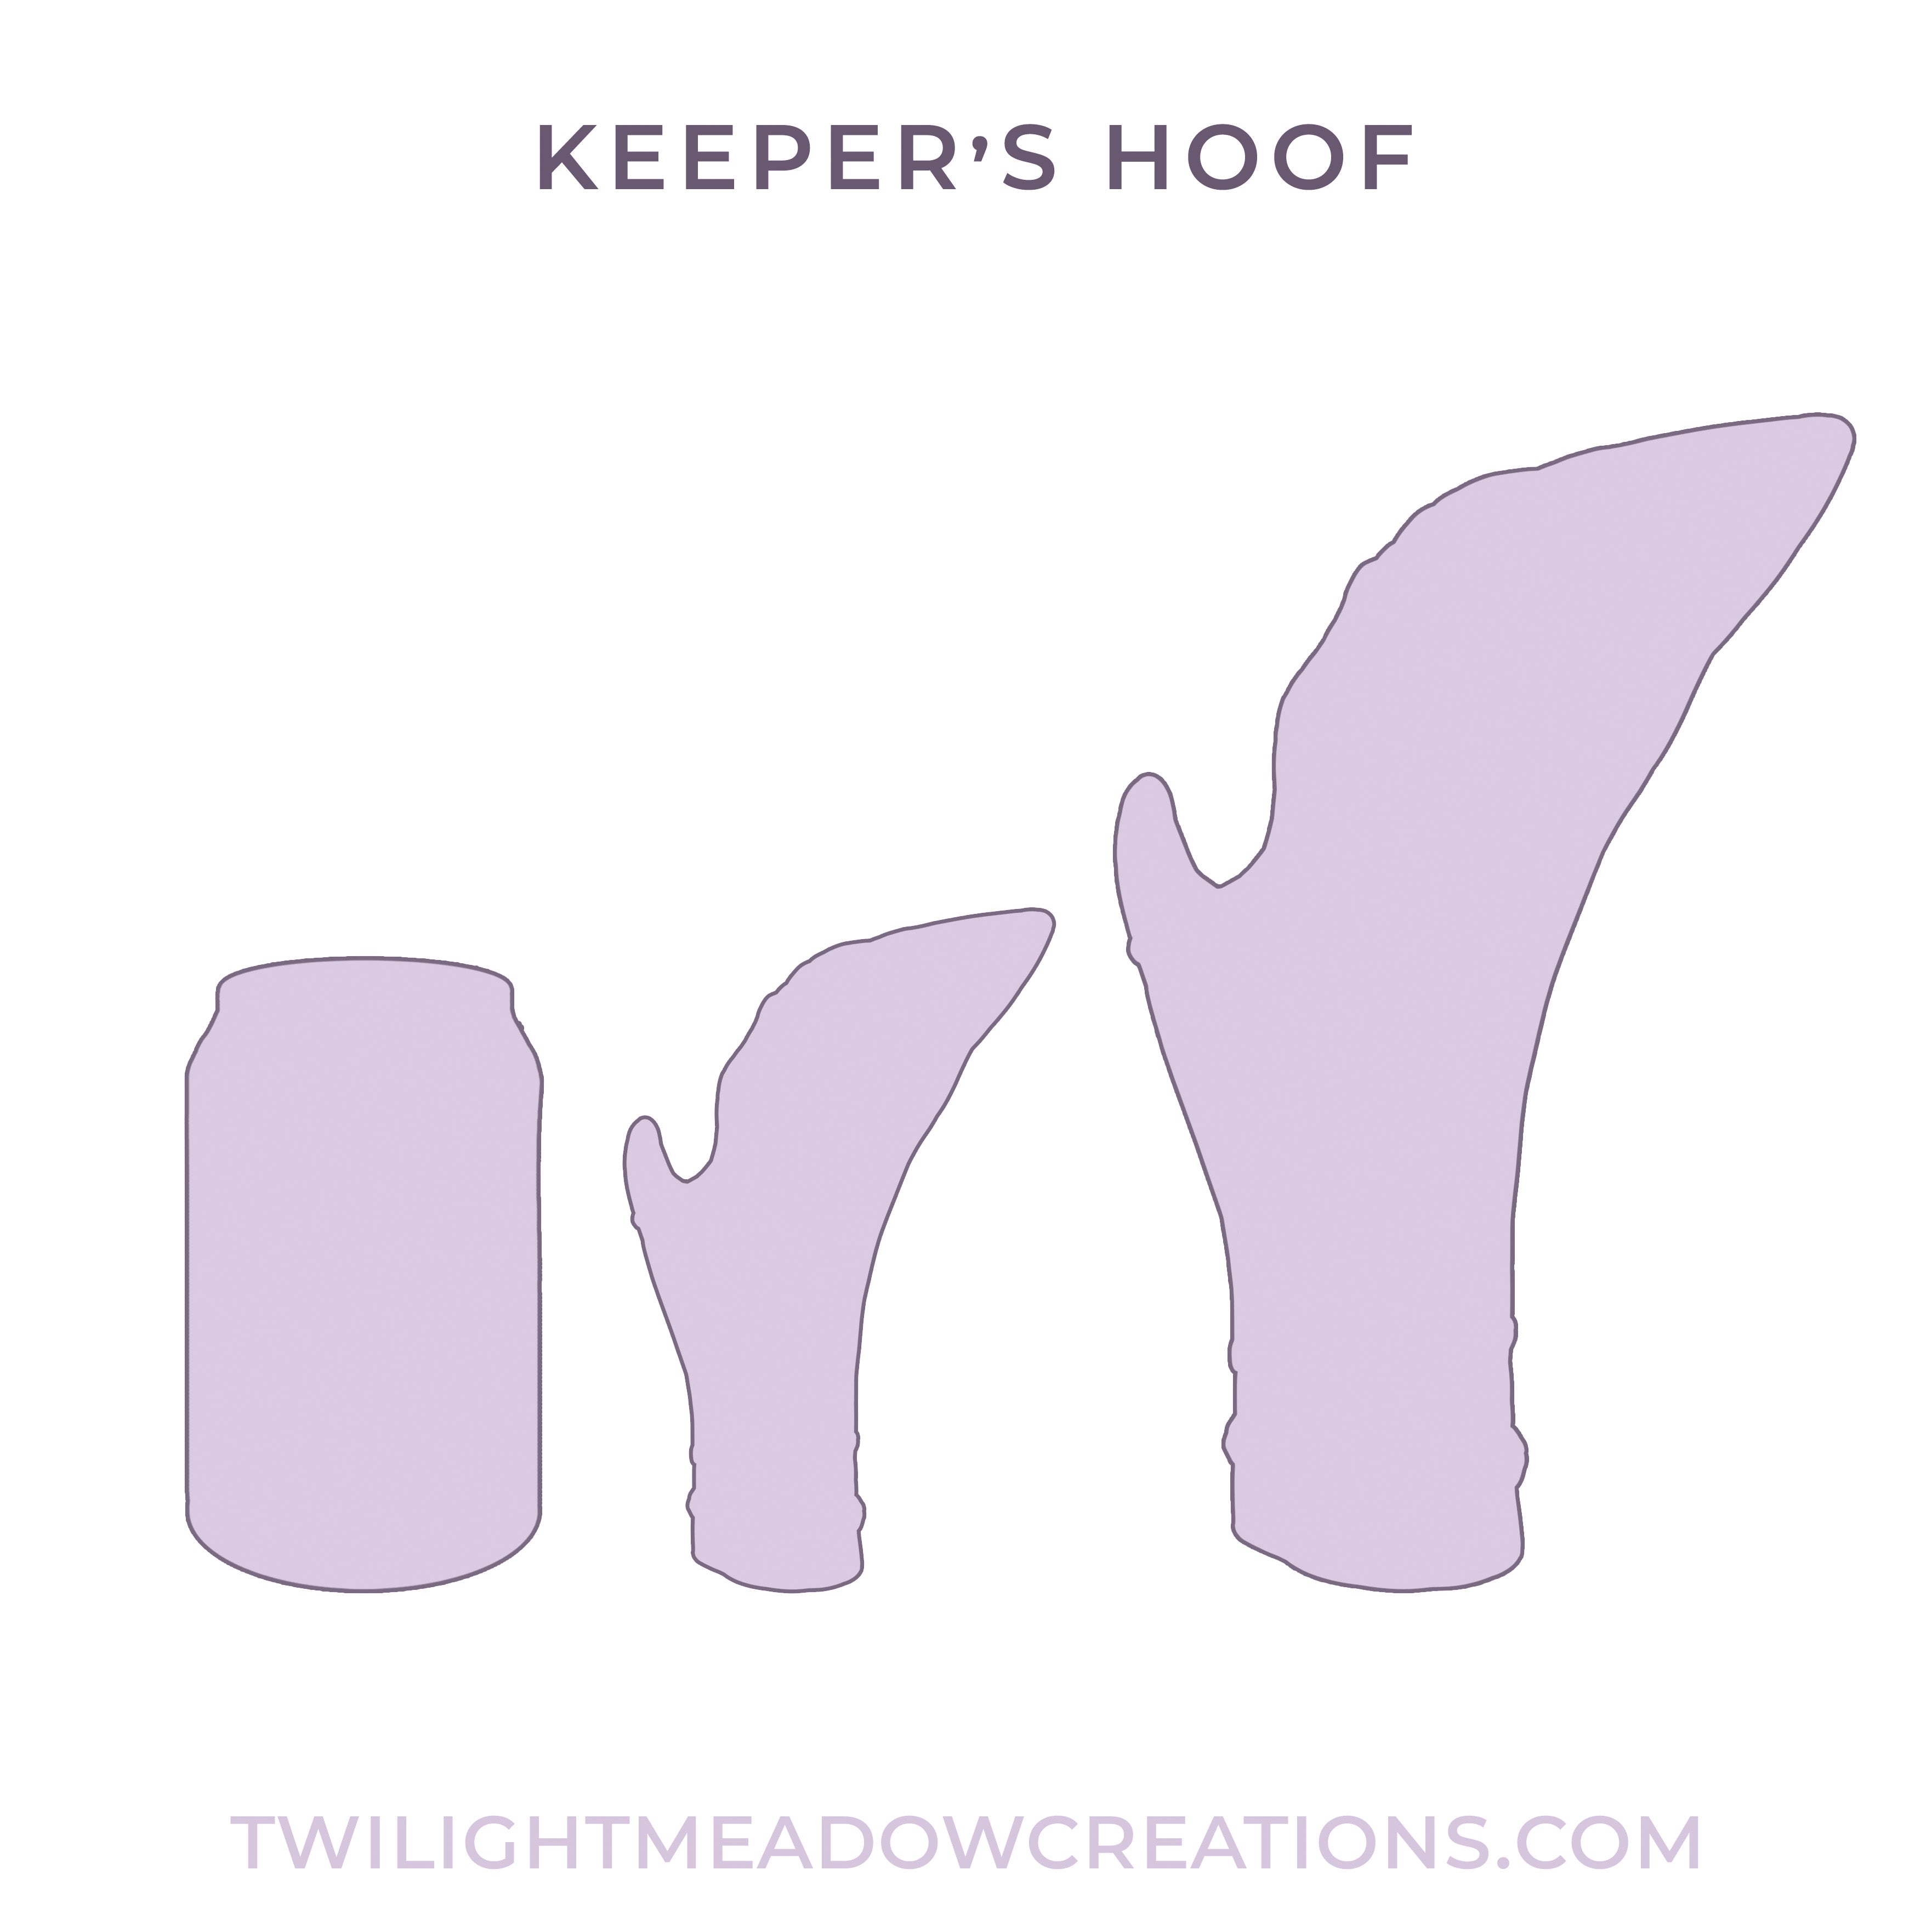 Small Keeper's Hoof (Firmness: Medium)